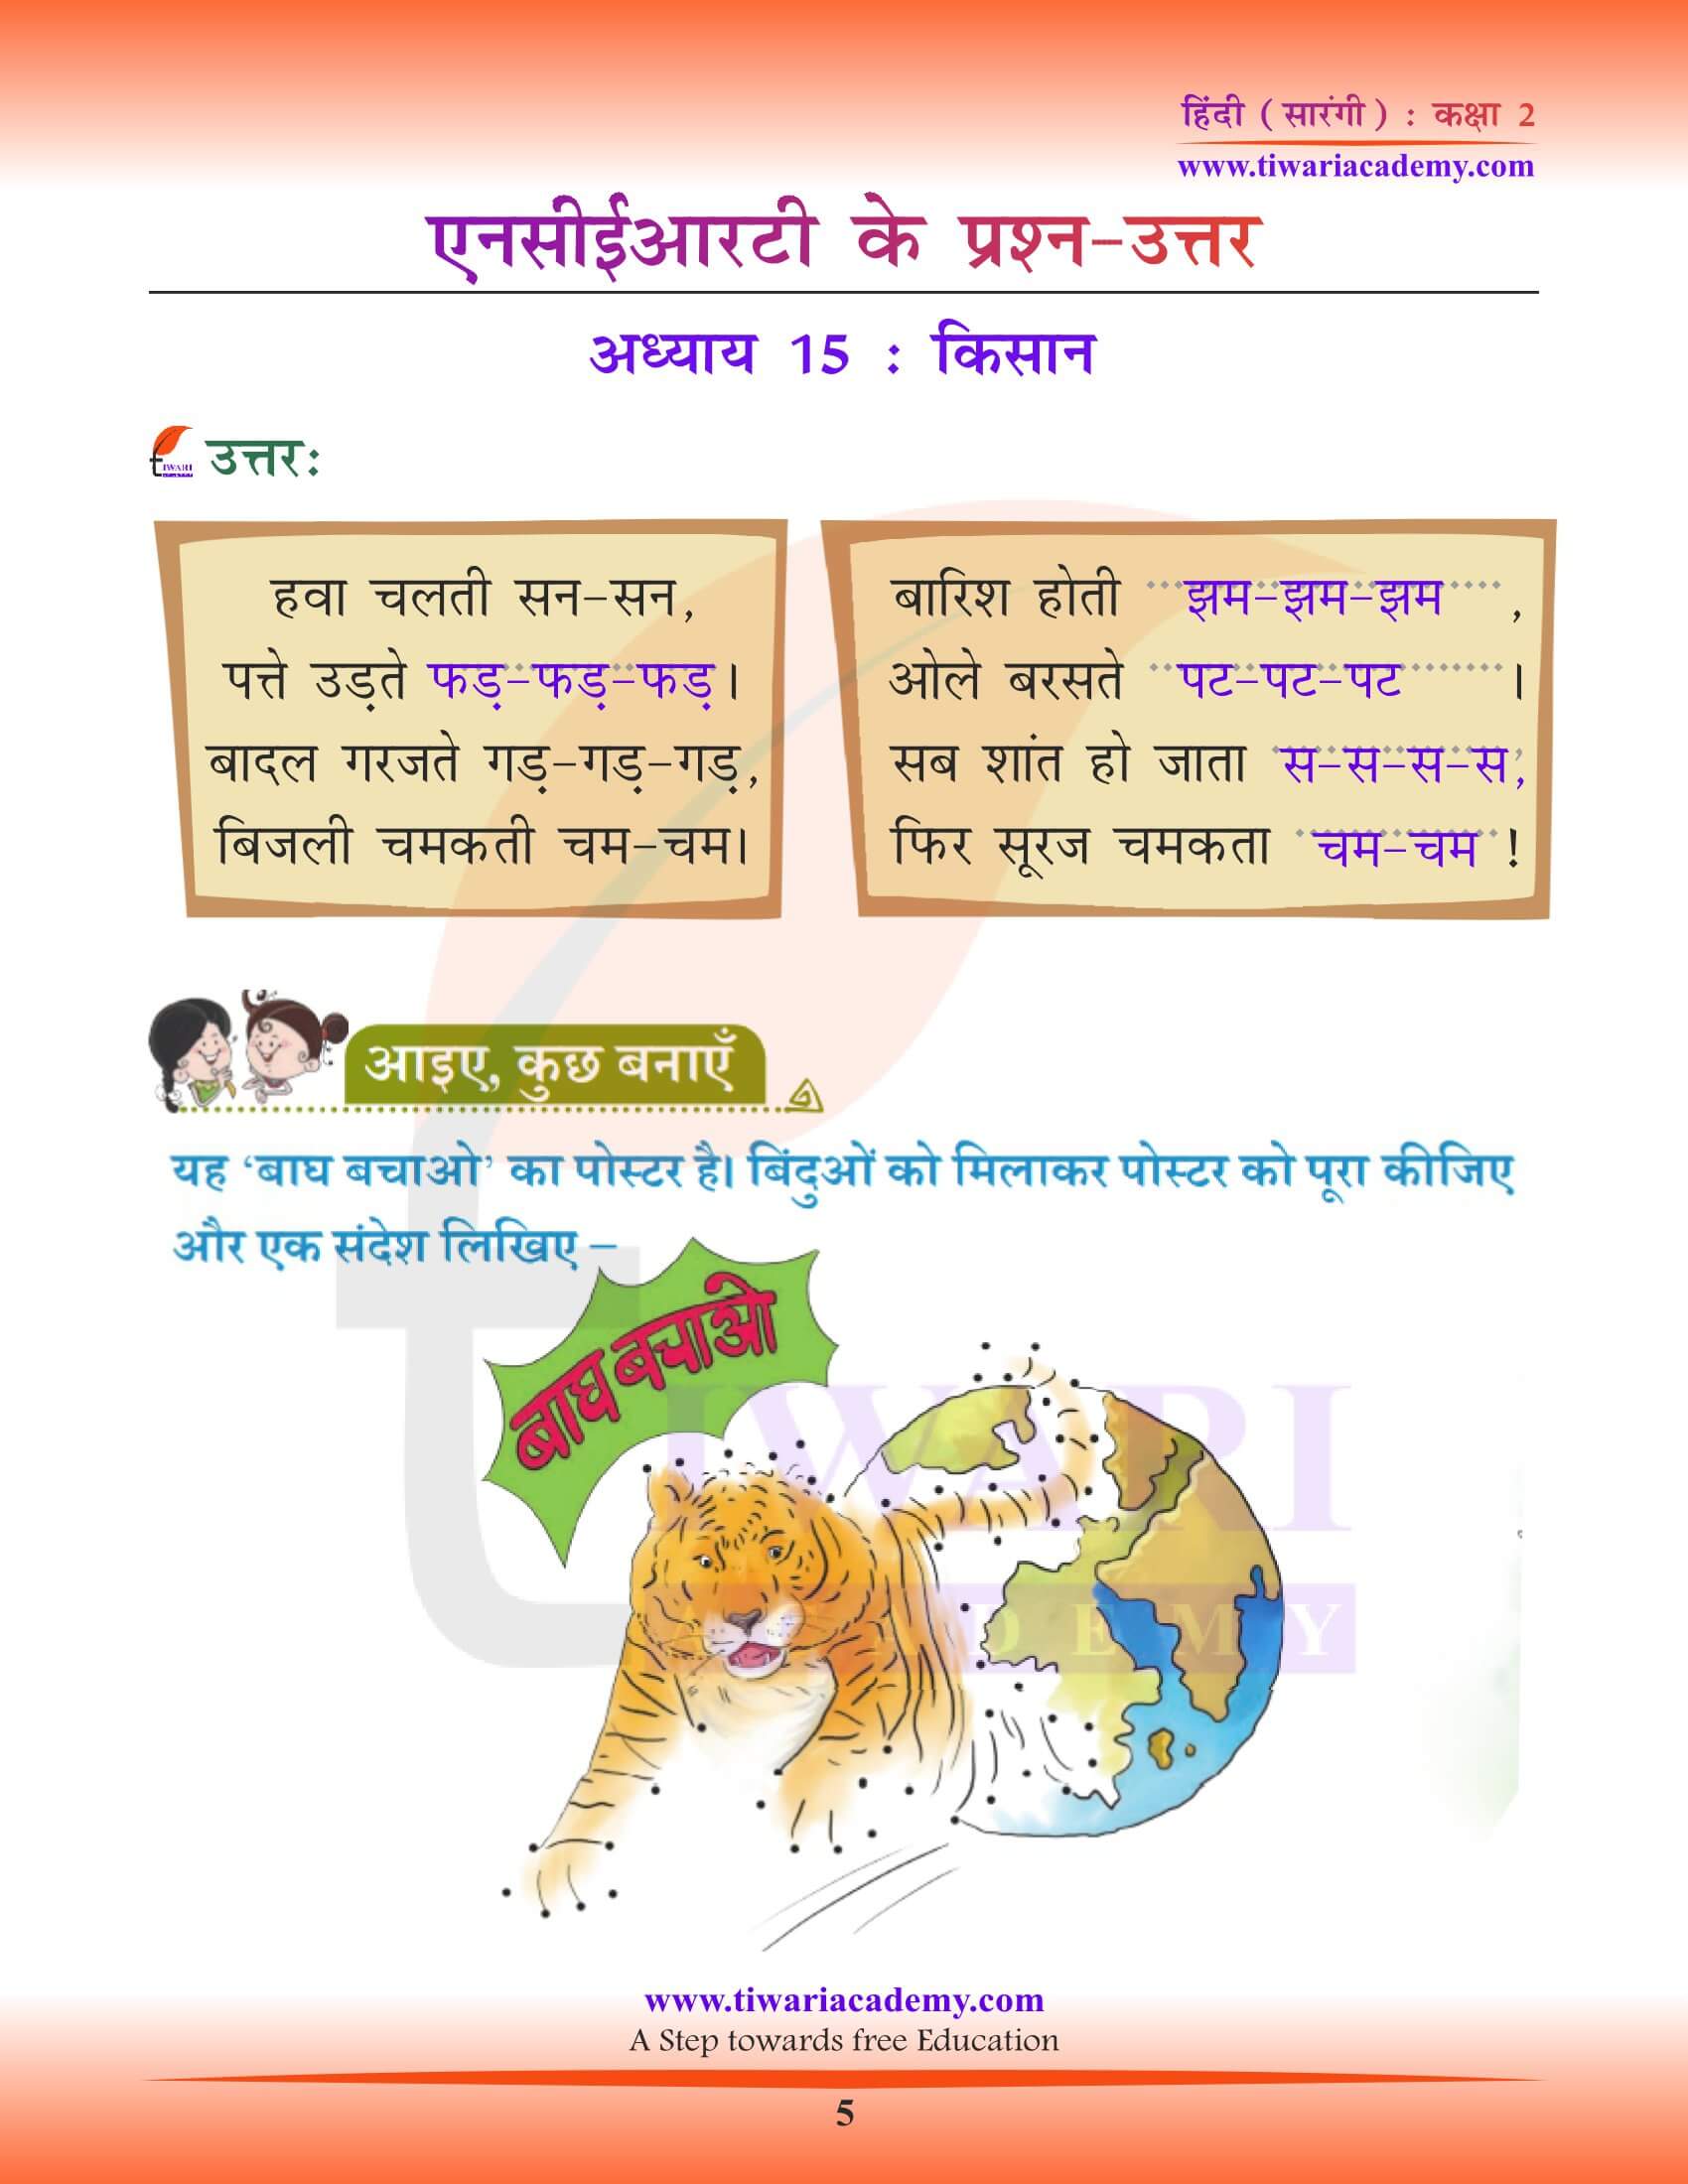 कक्षा 2 हिंदी सारंगी अध्याय 15 के उत्तर